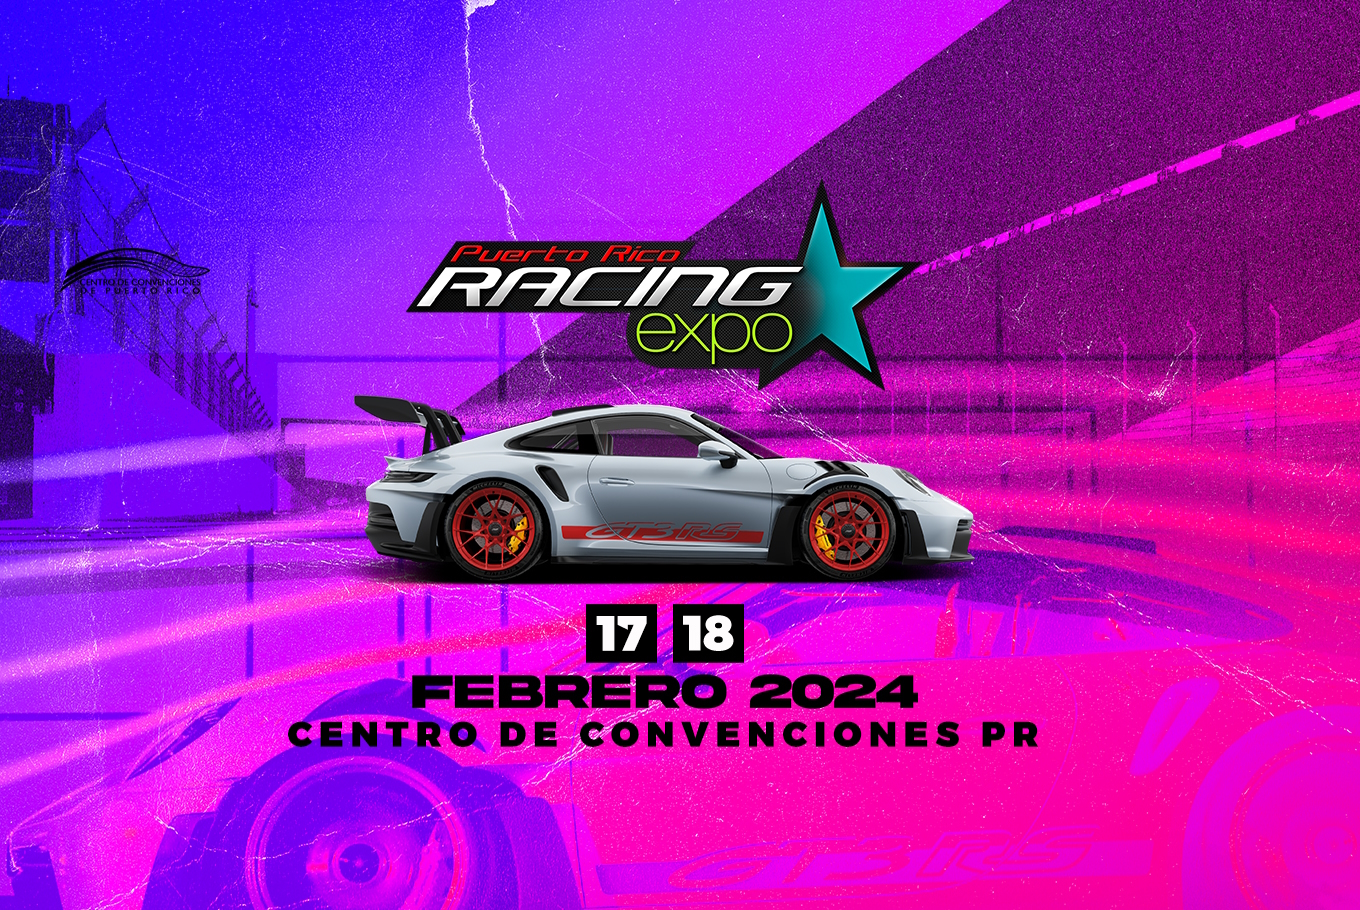 Puerto Rico Racing Expo